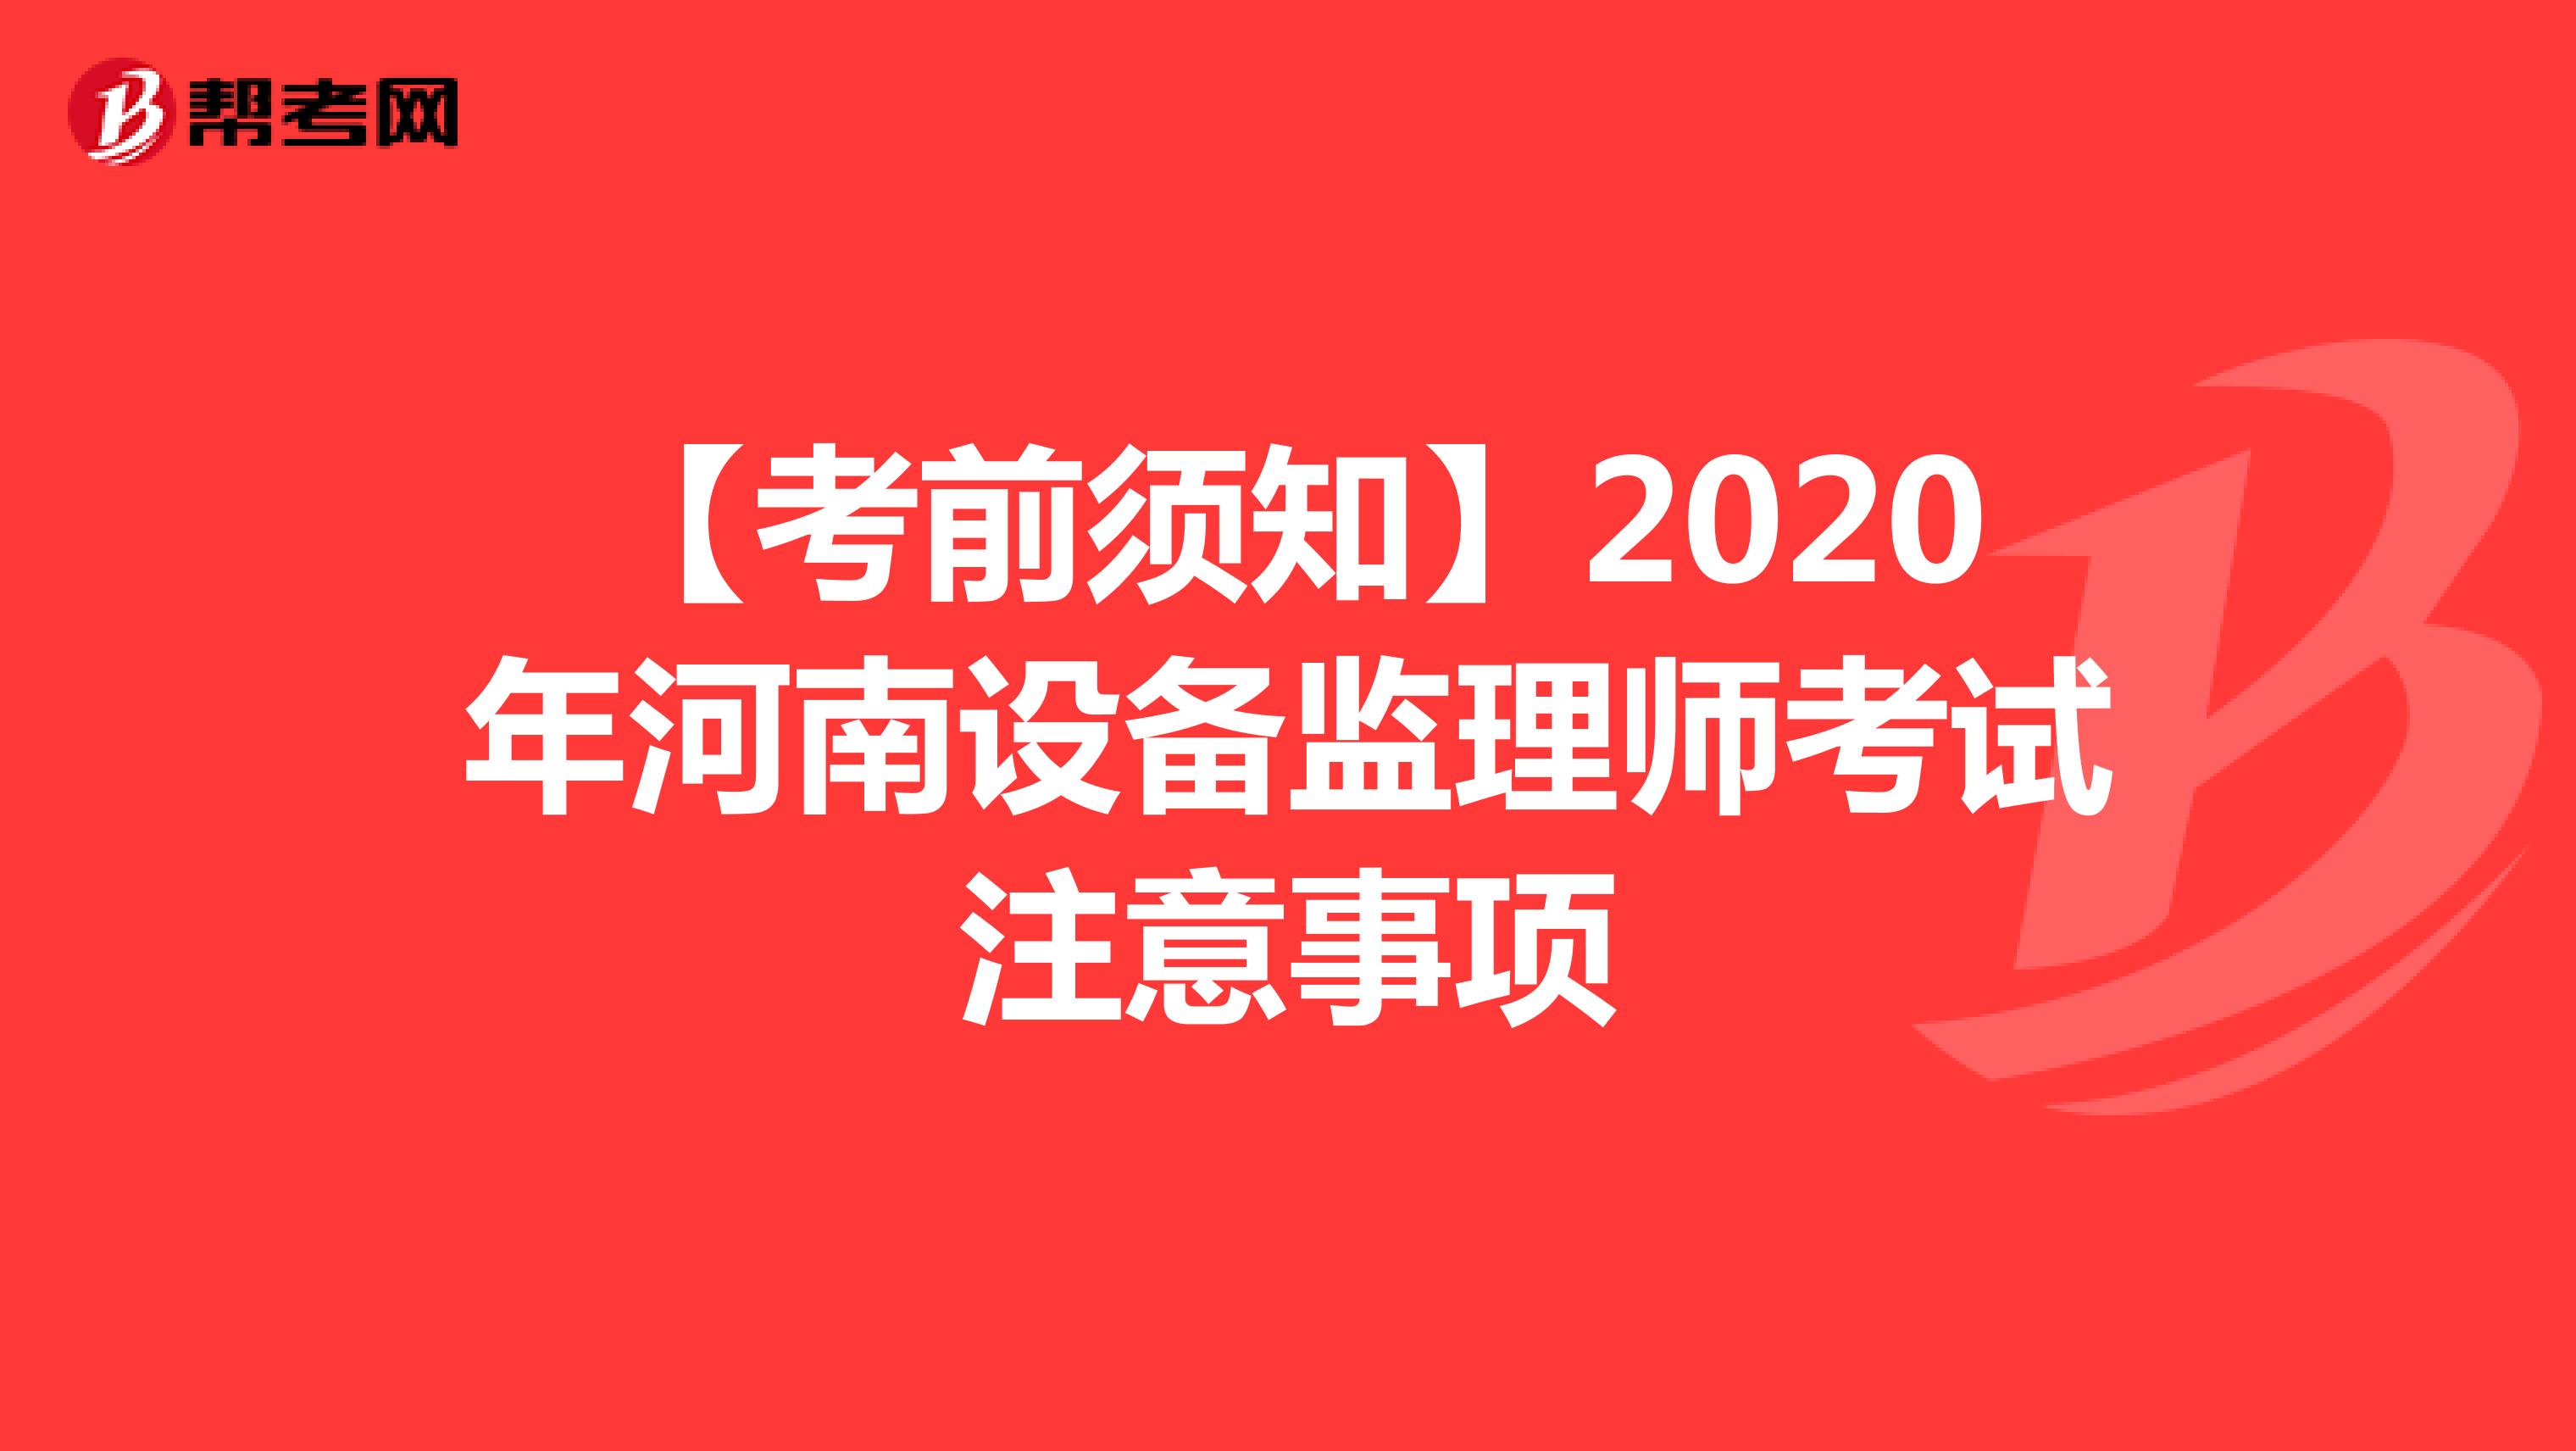 【考前须知】2020年河南设备监理师考试注意事项